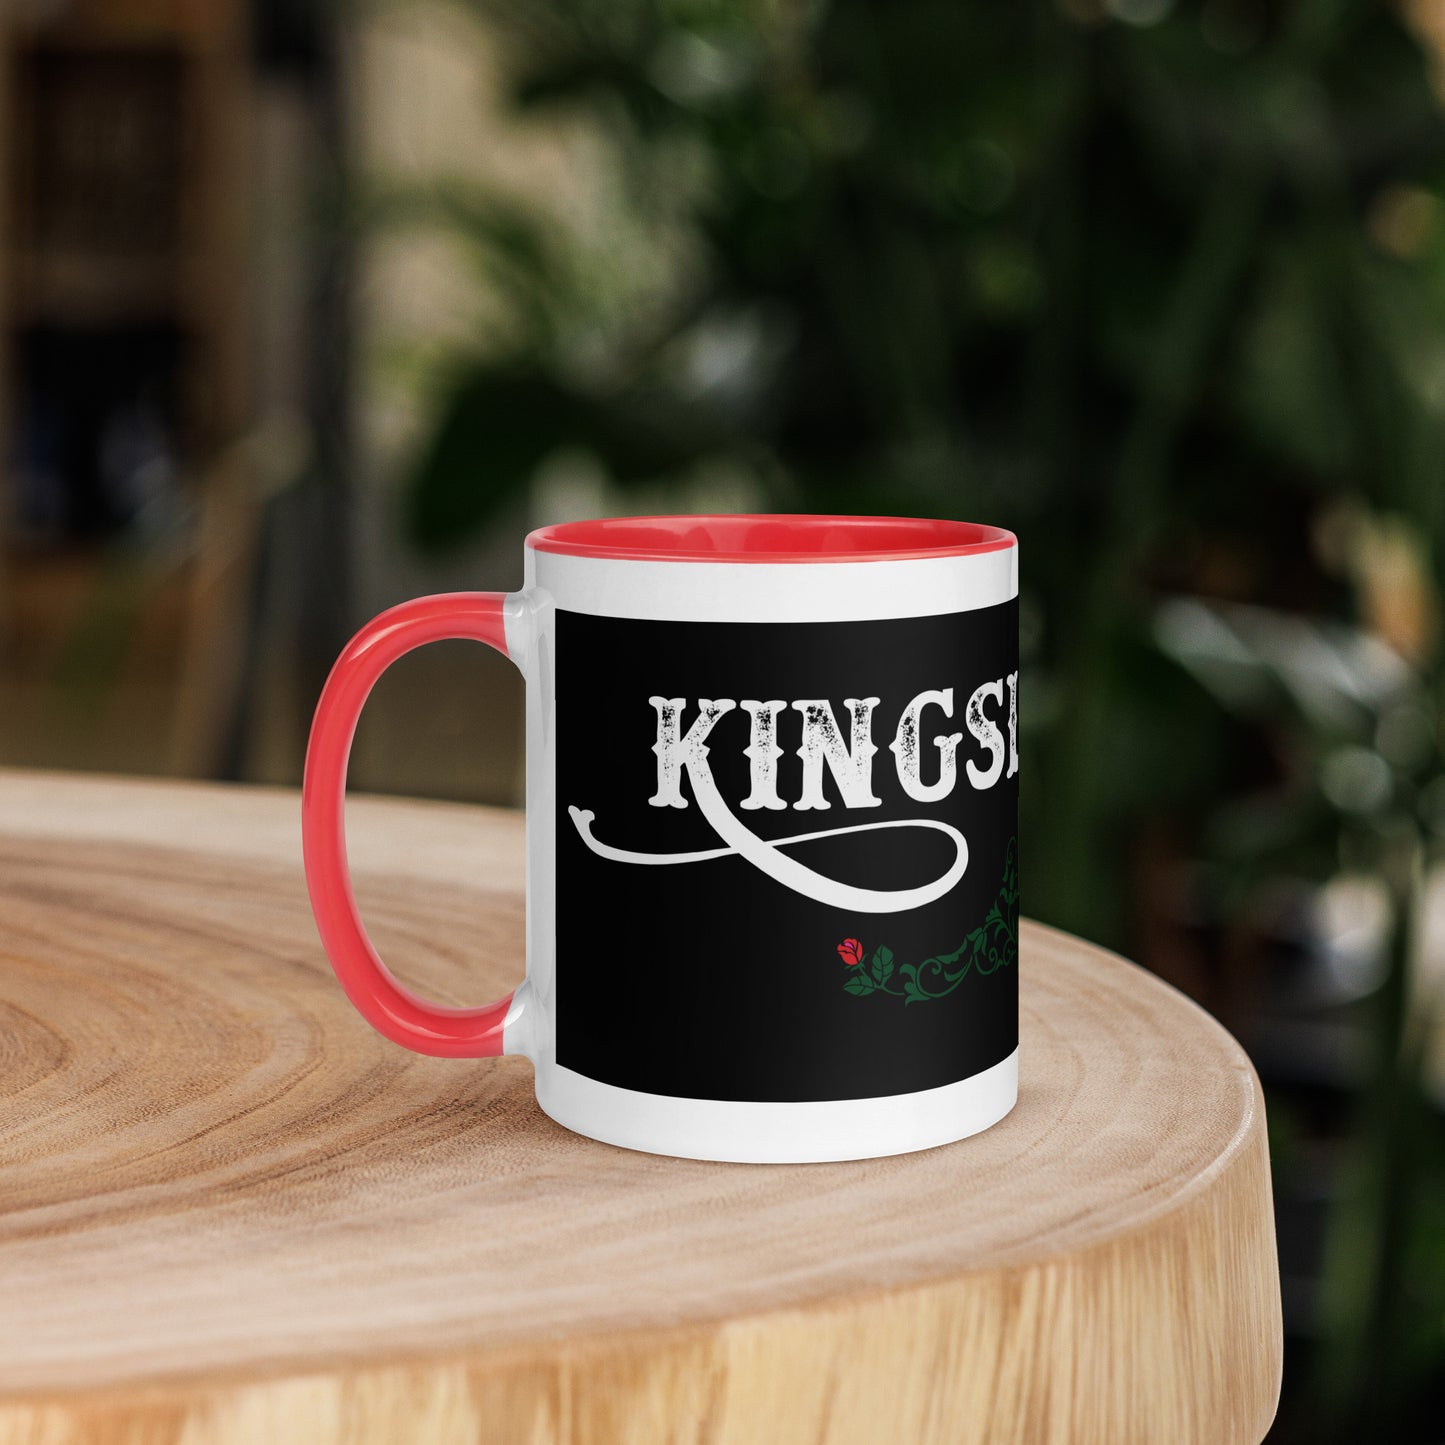 Kingslingers Mug, Black